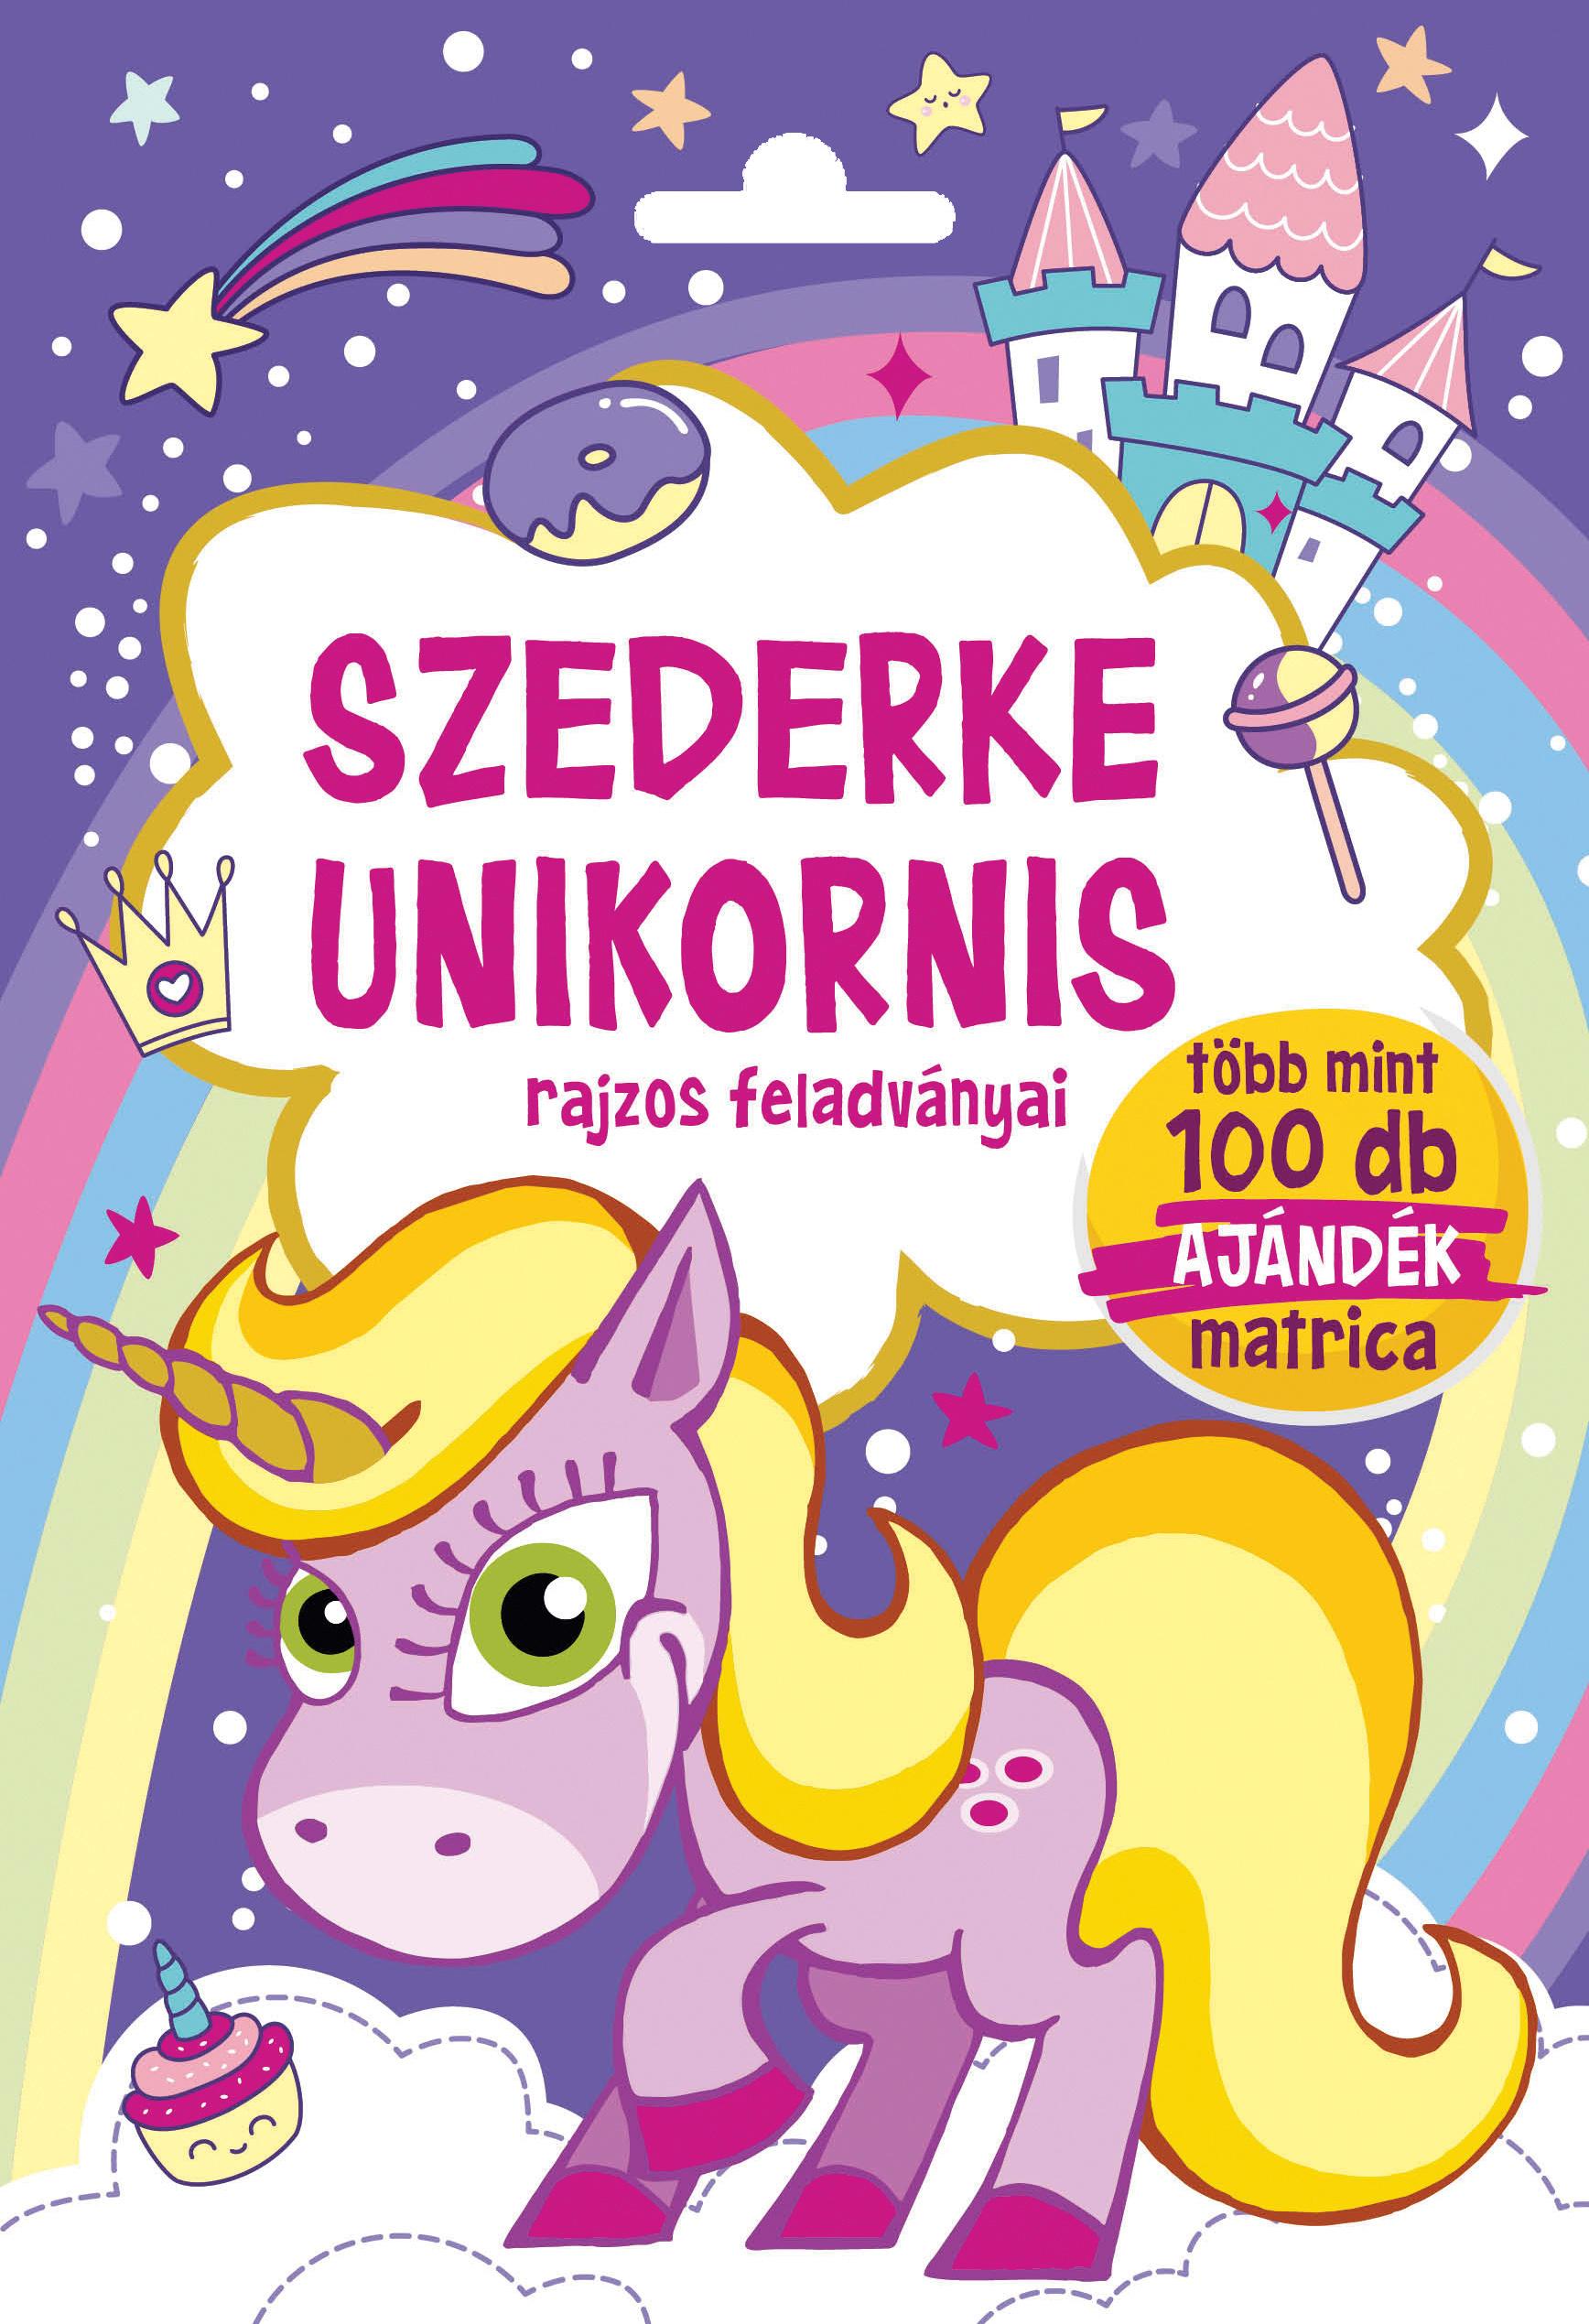 Szalay Könyvkiadó - Szederke Unikornis - Rajzos feladványai - Több mint 100 db ajándék matrica